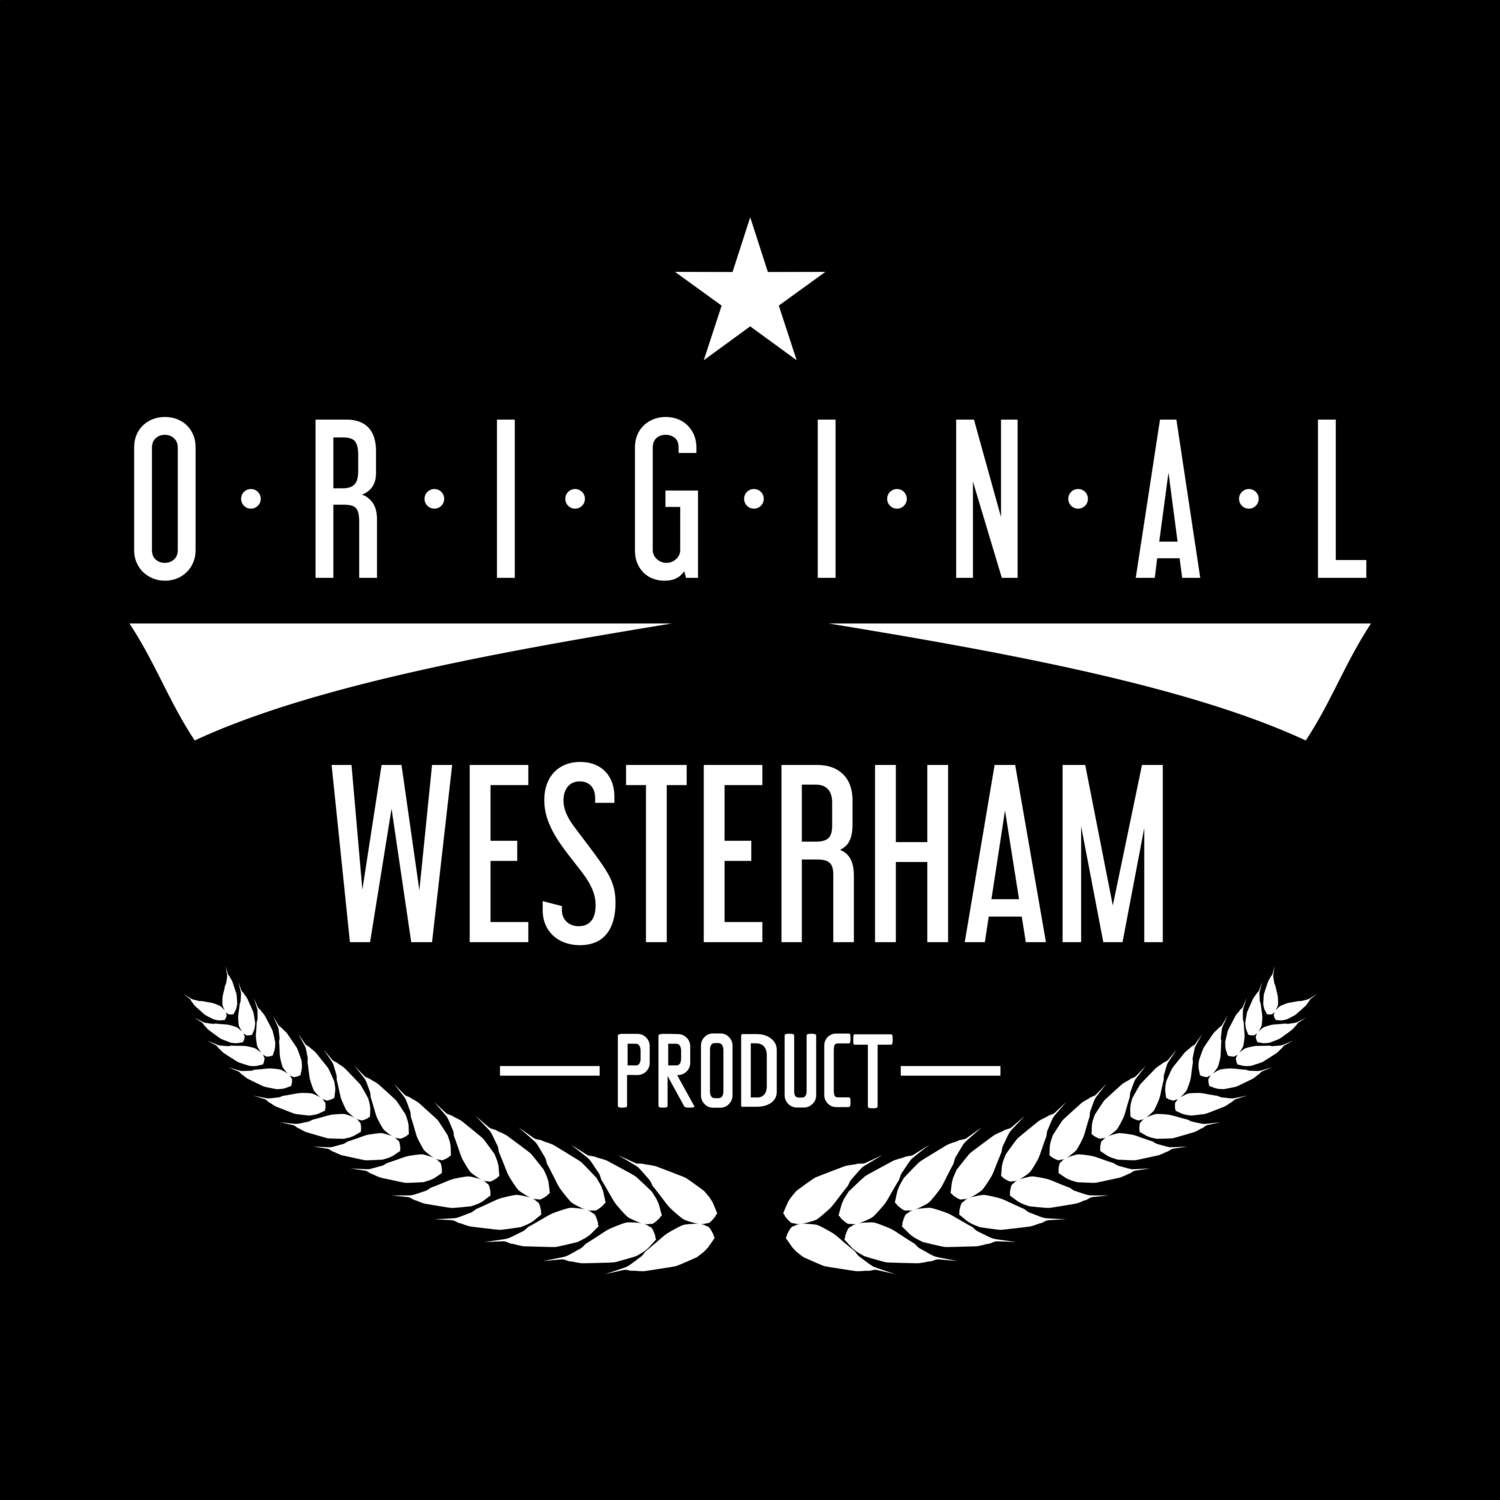 Westerham T-Shirt »Original Product«